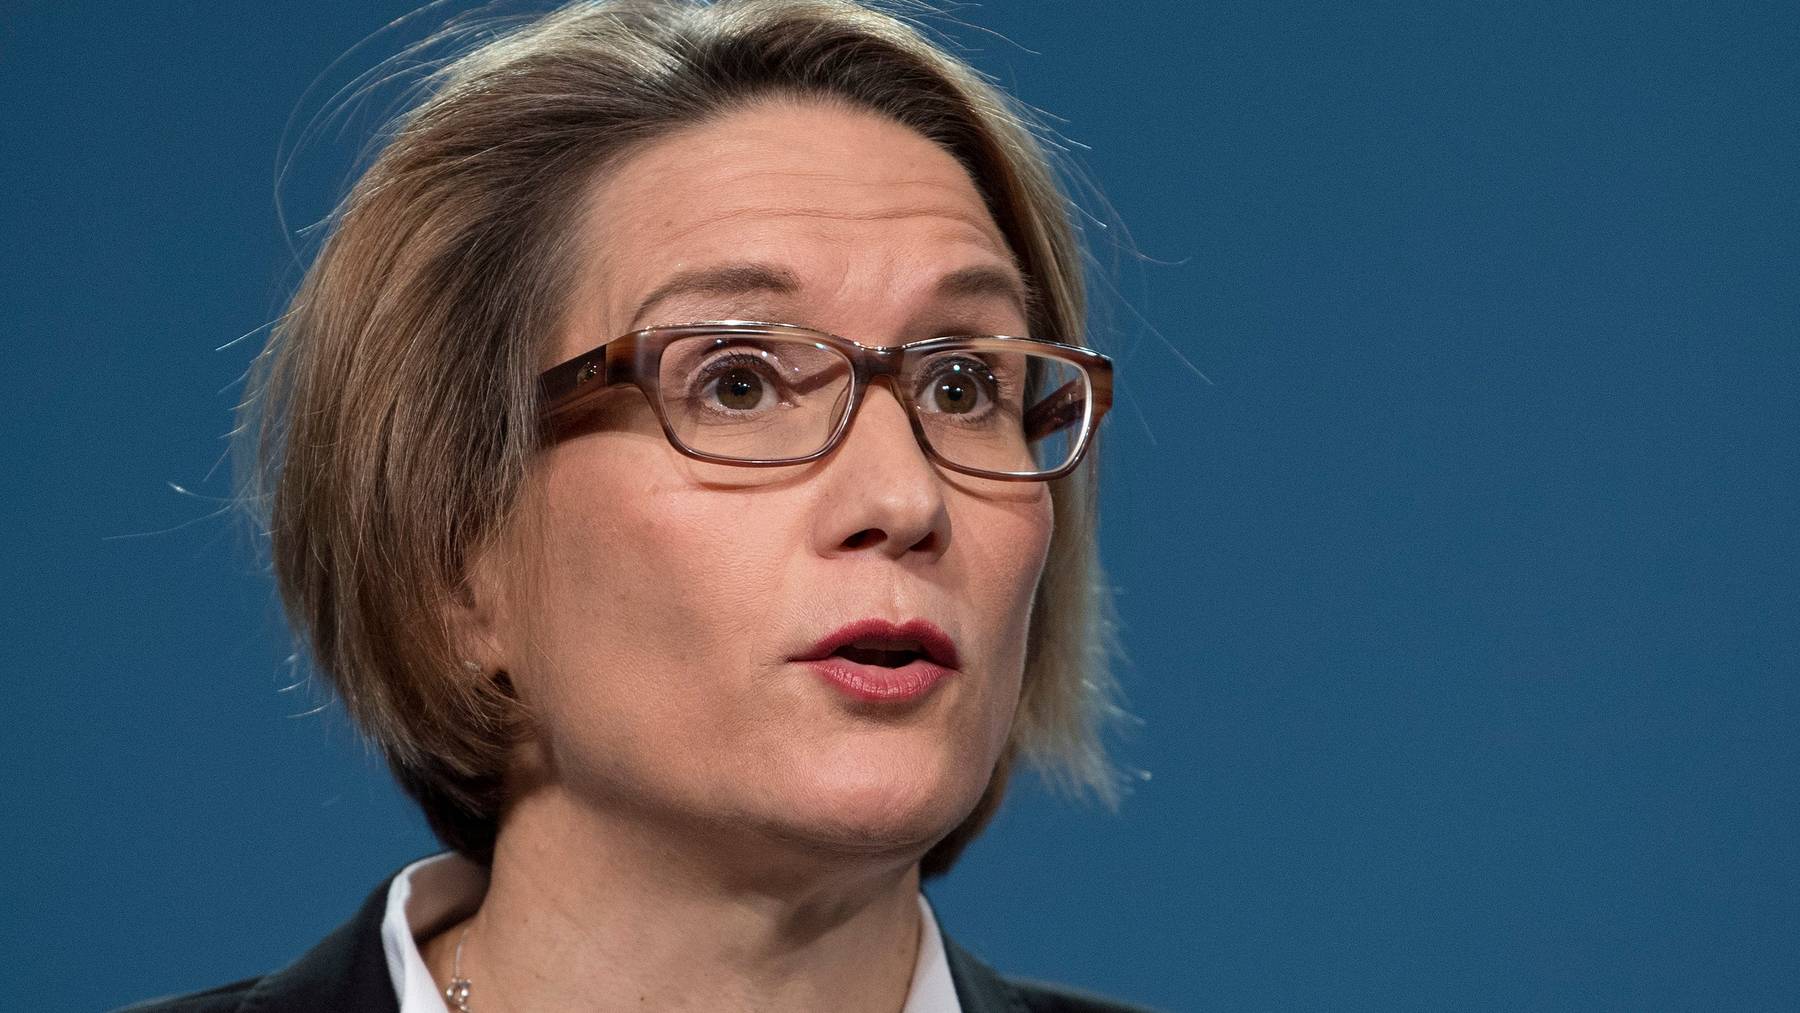 Andréa Maechler ist Mitglied des Direktoriums der Schweizerischen Nationalbank.